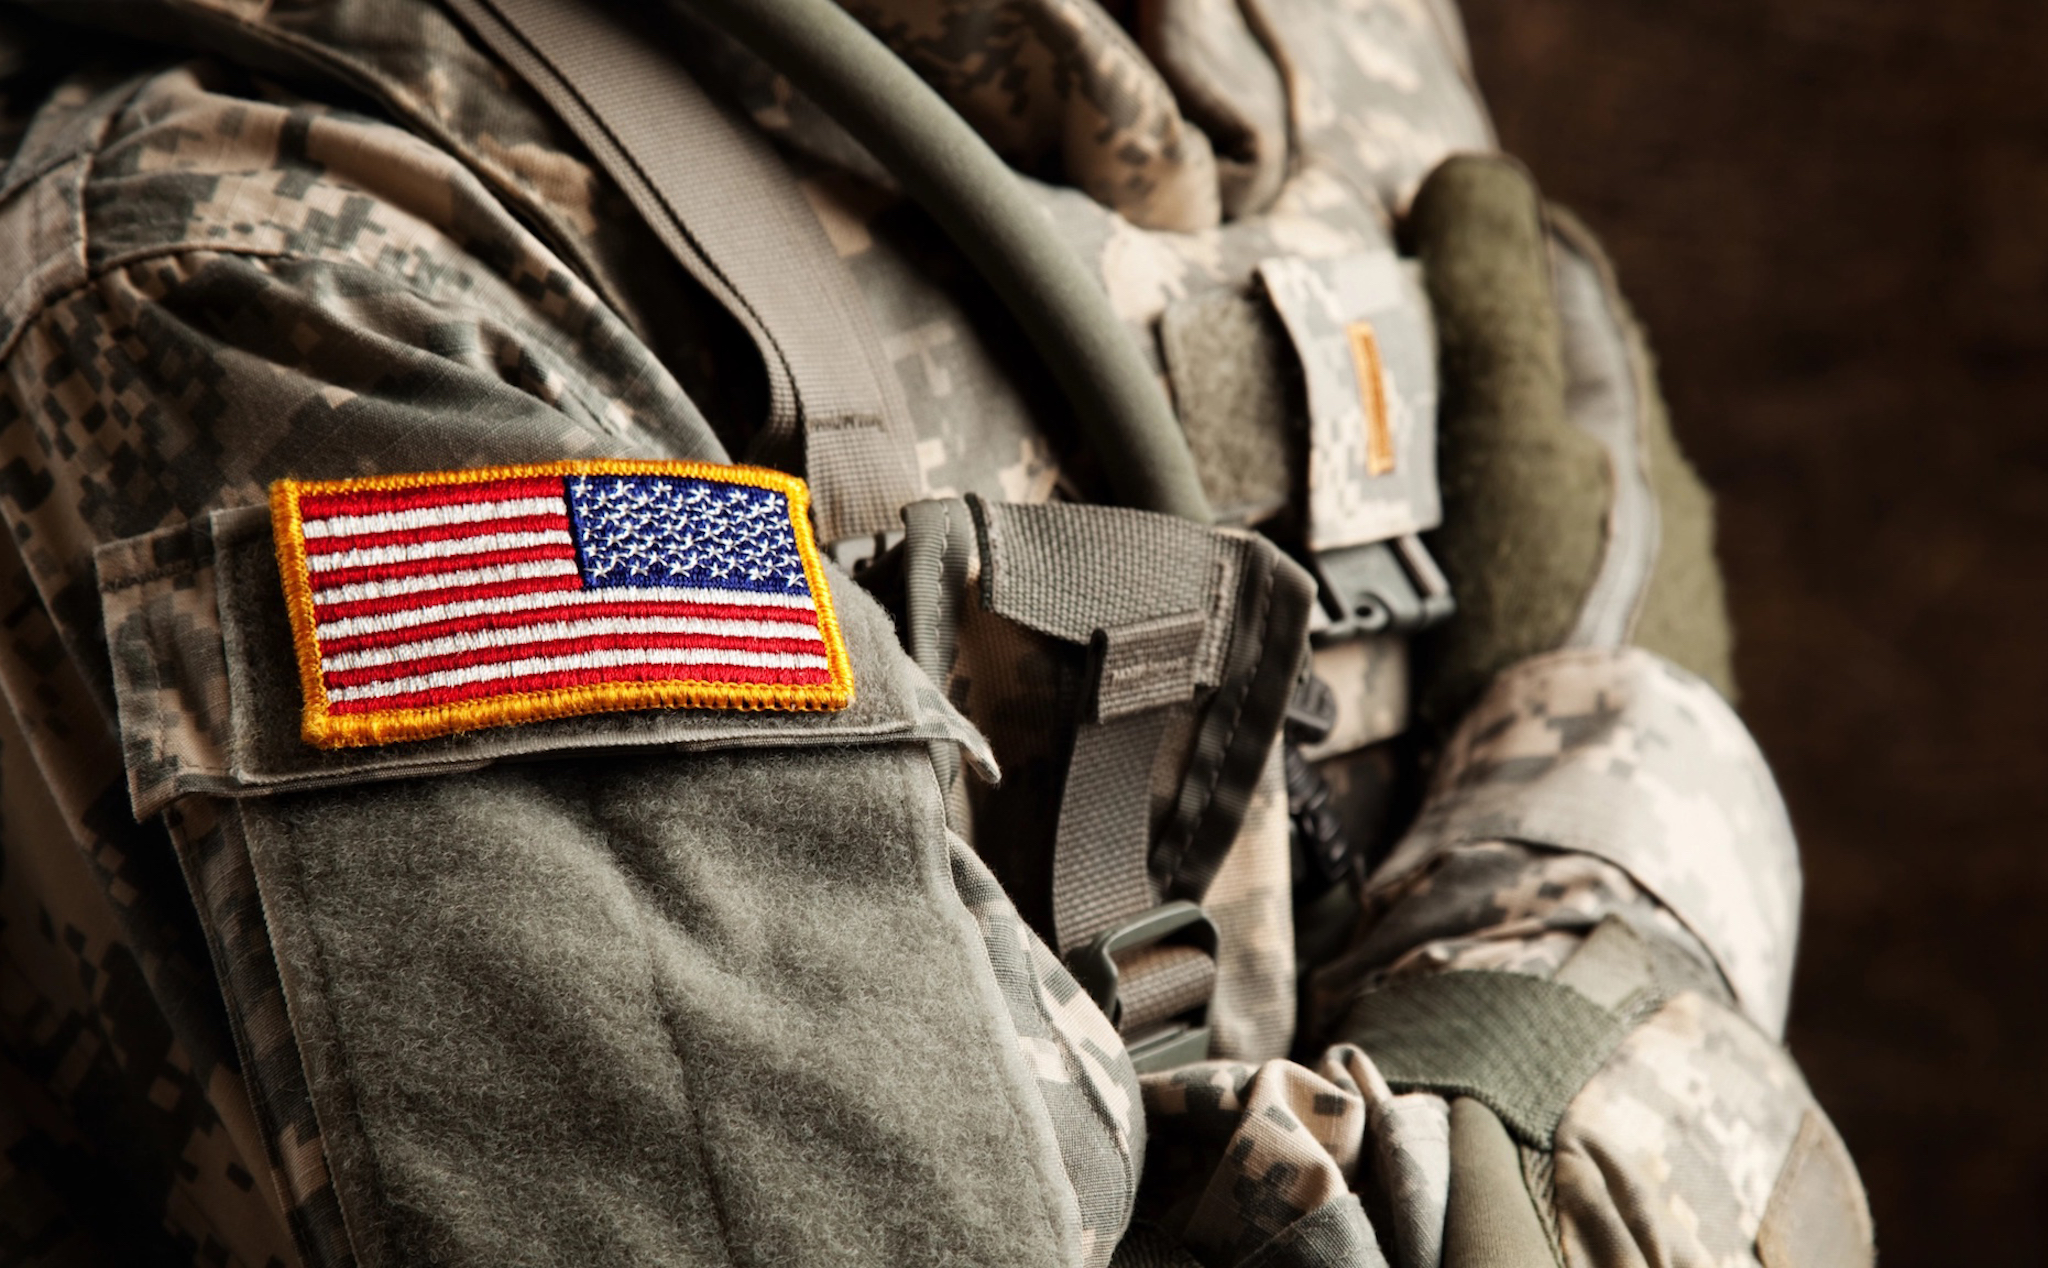 Lục đội Mỹ nâng tiền thưởng lên hơn 1,1 tỷ đồng để thu hút tân binh nhập ngũ